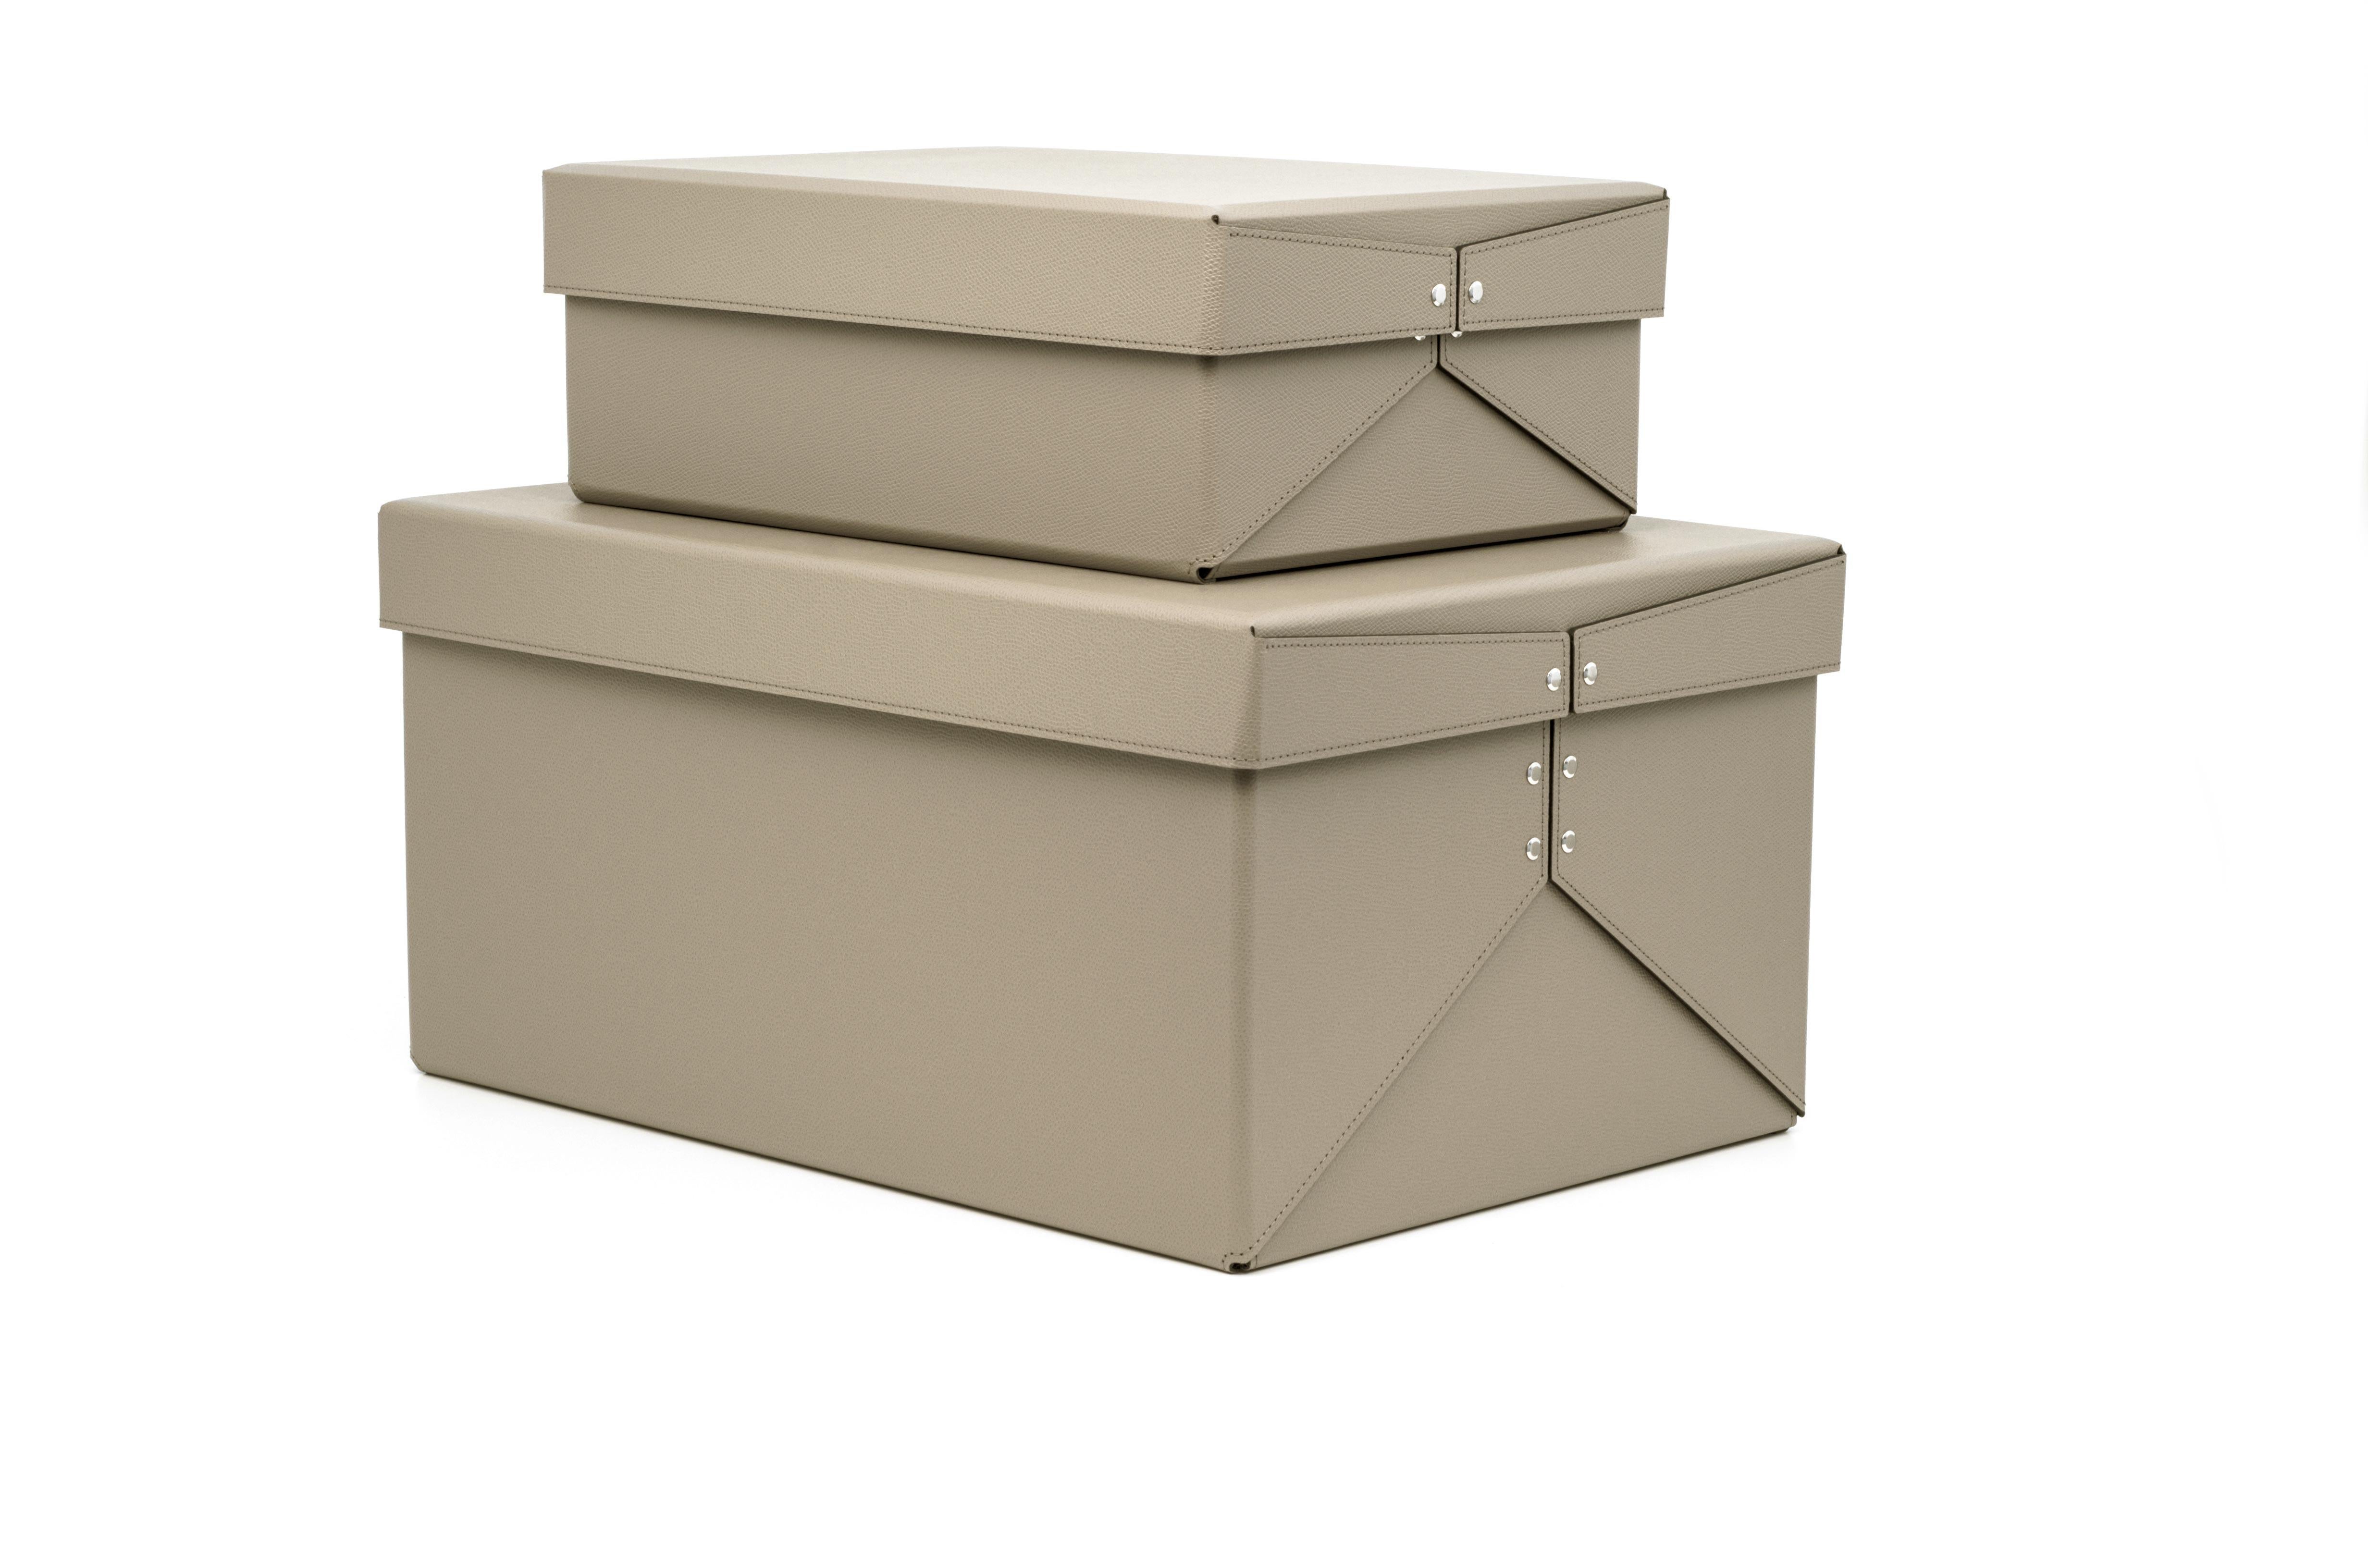 Notre boîte Origami est un complément d'une utilité infinie pour un placard principal. Deux tailles idéales pour organiser votre intérieur.

Fabriqué dans un matériau écologique, lavable et résistant, Origami est le complément parfait pour améliorer